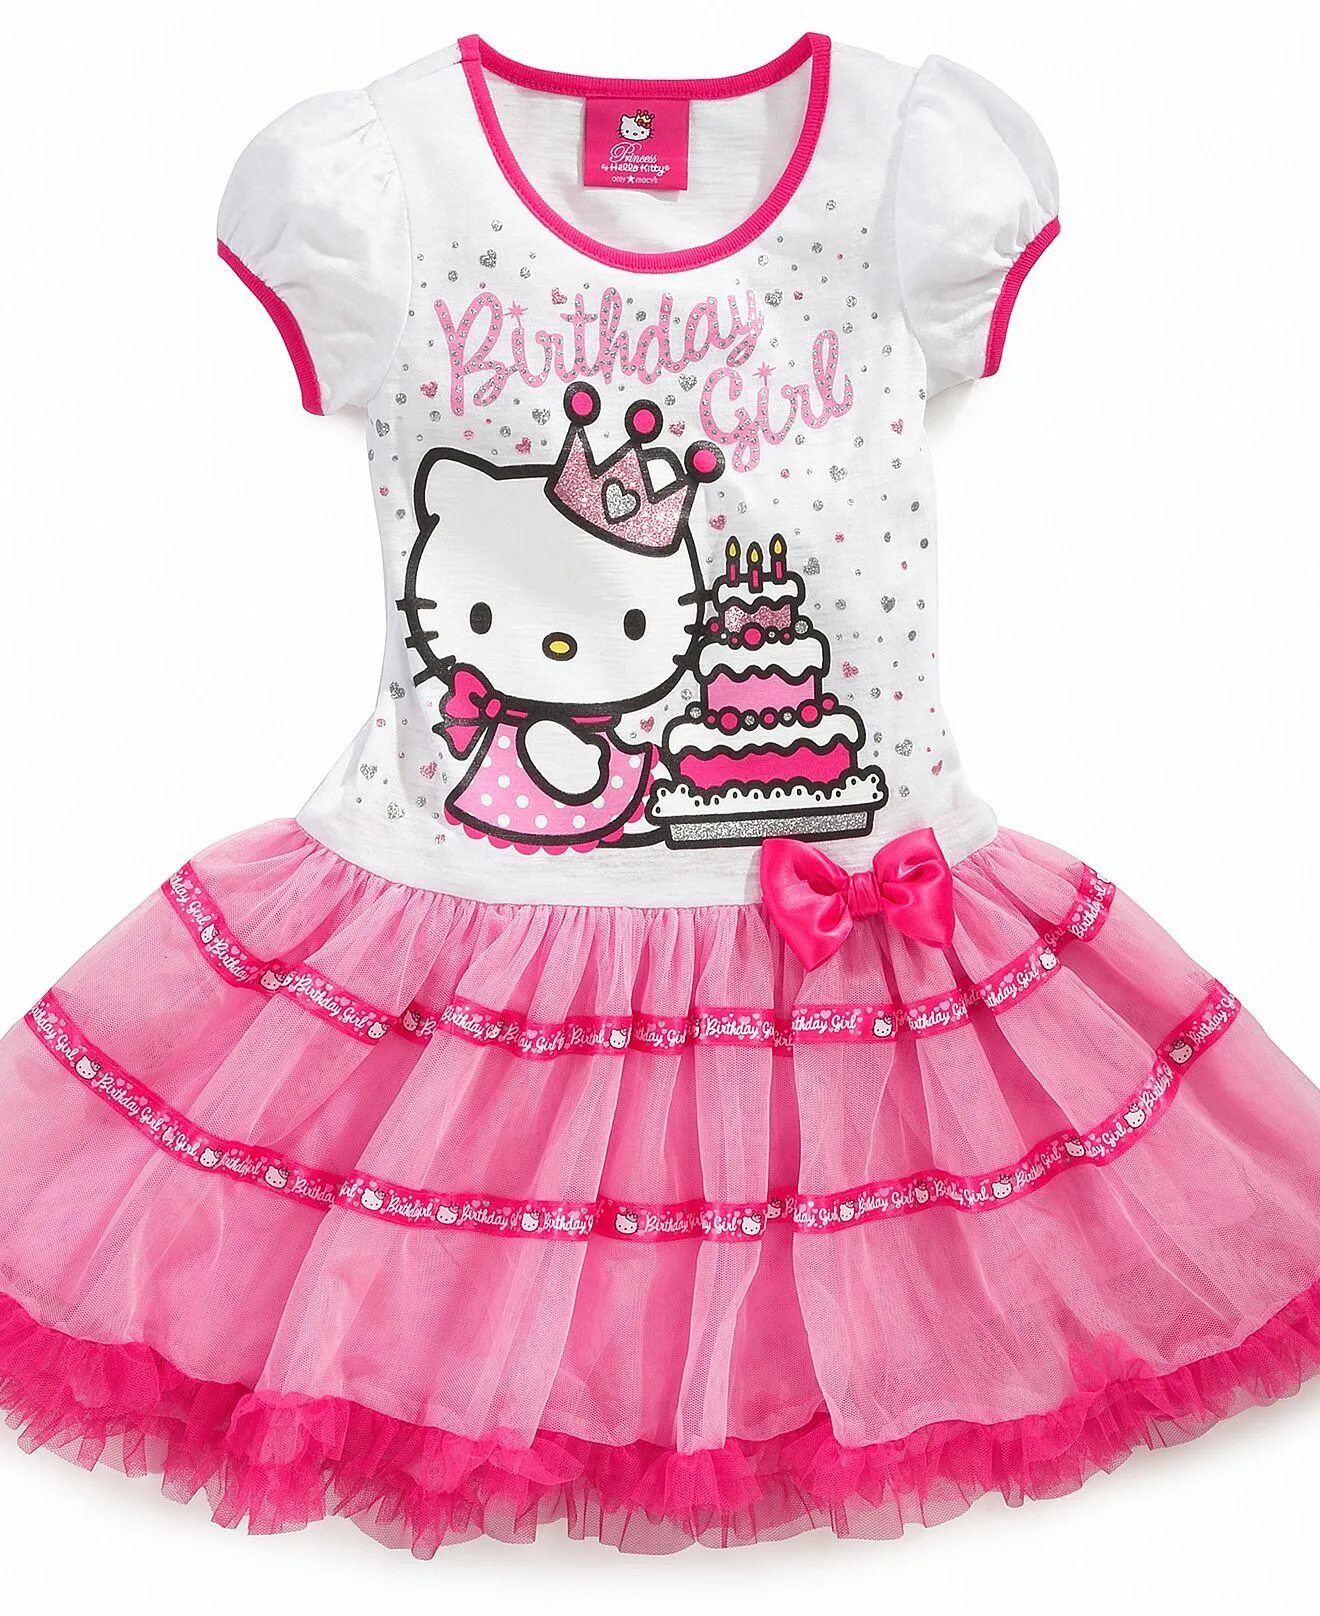 Хэллоу одежда. Платье Хелло Китти для девочек. Детское платье с Хеллоу Китти. Хелойкитти с одеждой. Хеллоу Китти в платье.